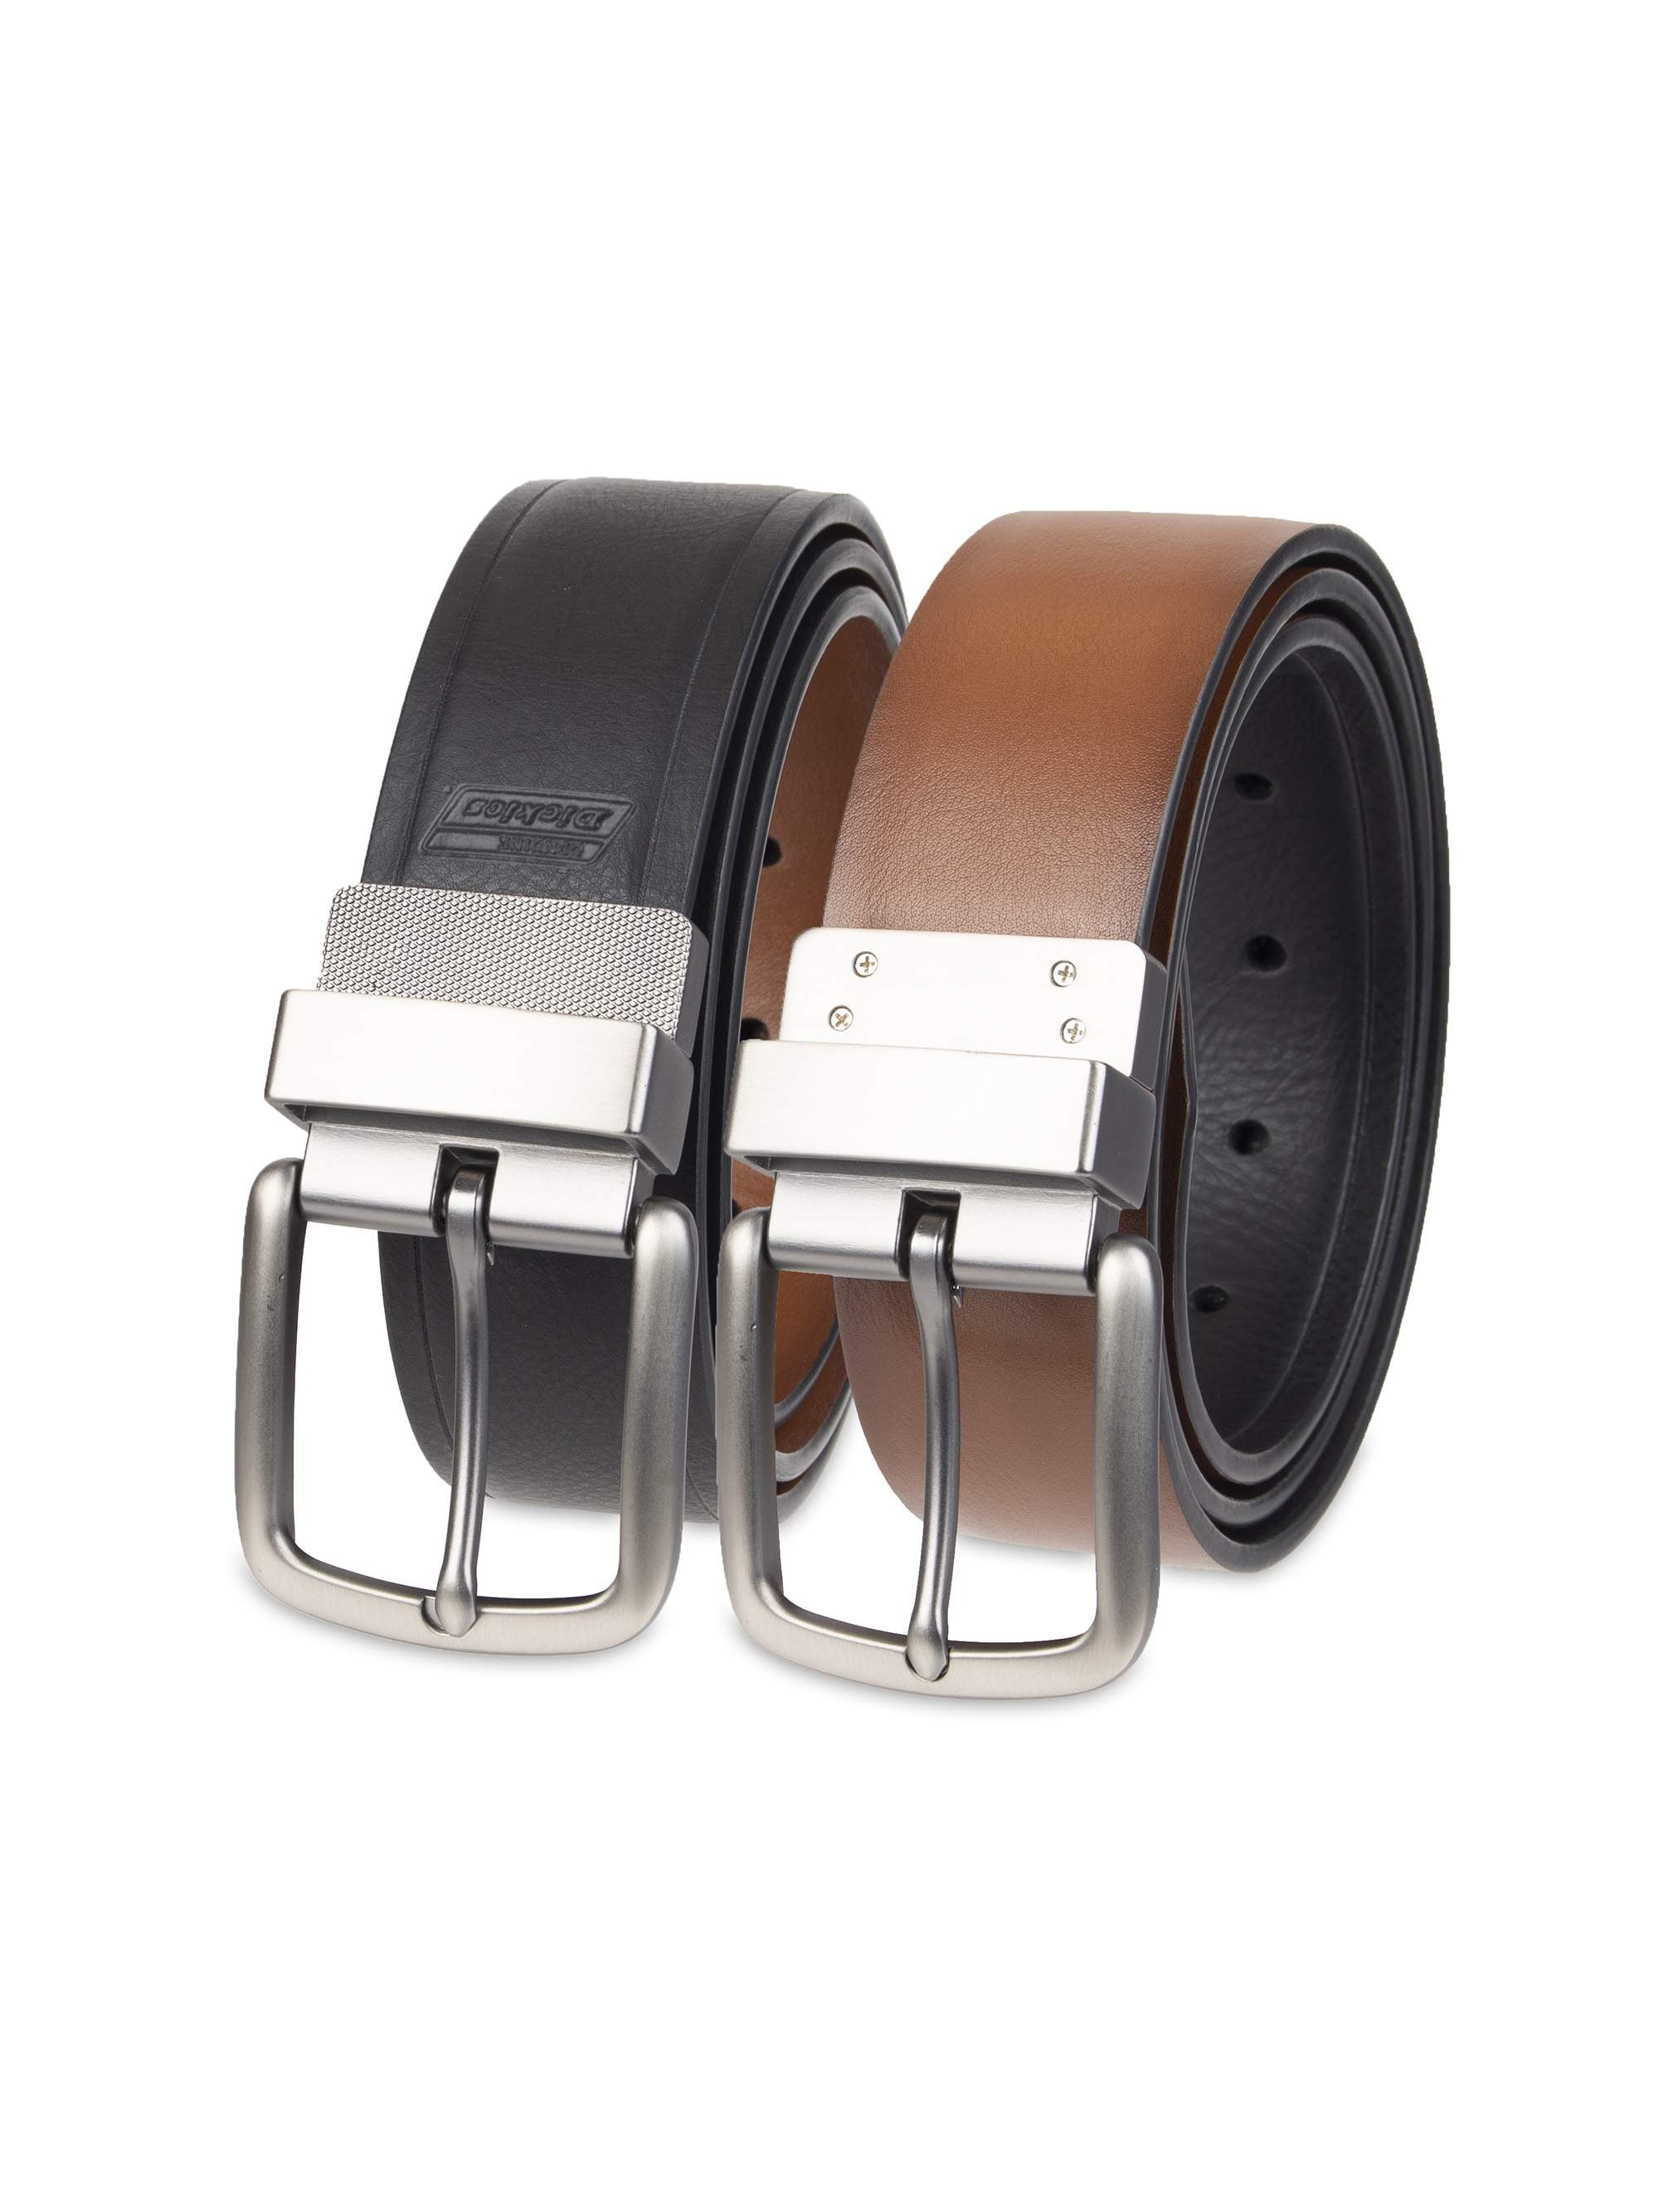 Mens Belt,Long Automatic buckle Business Leisure mens Belts-C 115cm 41inch 